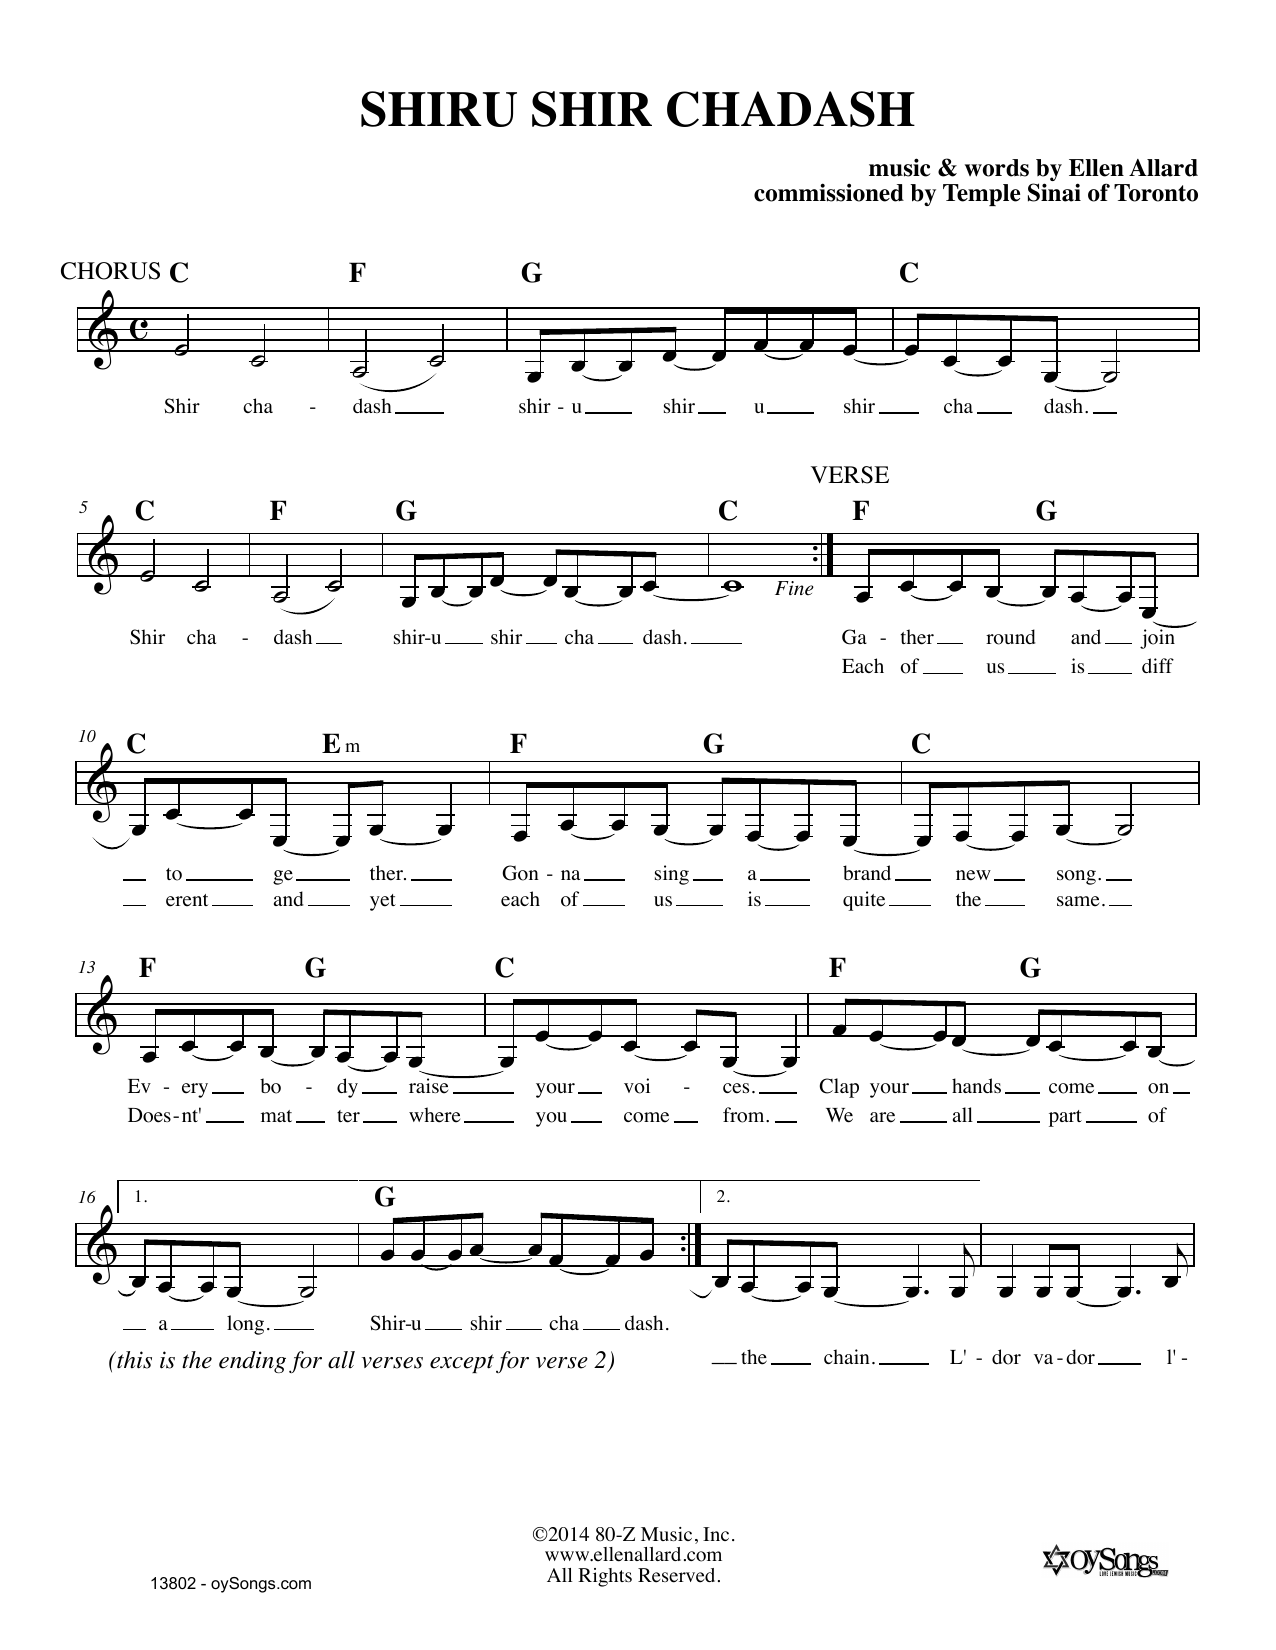 Ellen Allard Shiru Shir Chadash sheet music notes and chords arranged for Lead Sheet / Fake Book